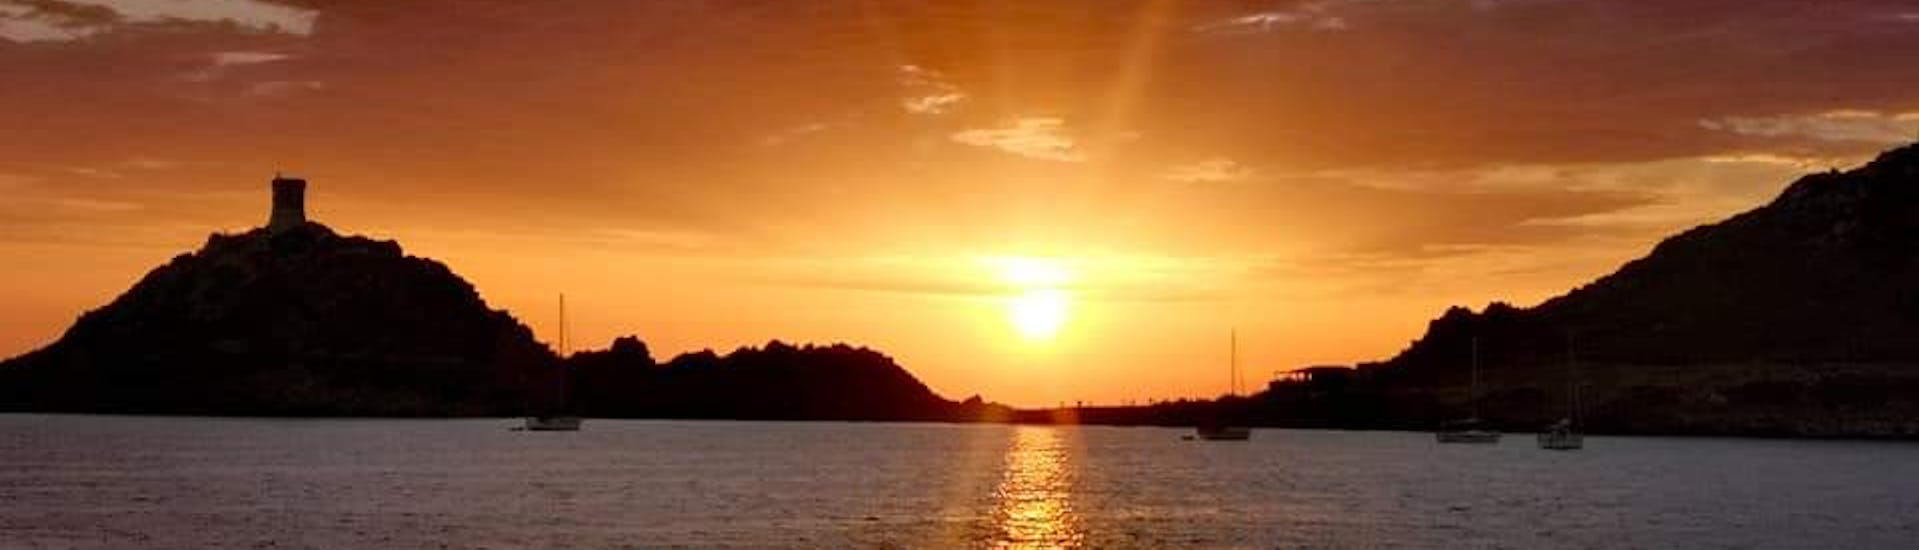 Gita in barca da Porticcio a Isole Sanguinarie  e tramonto.